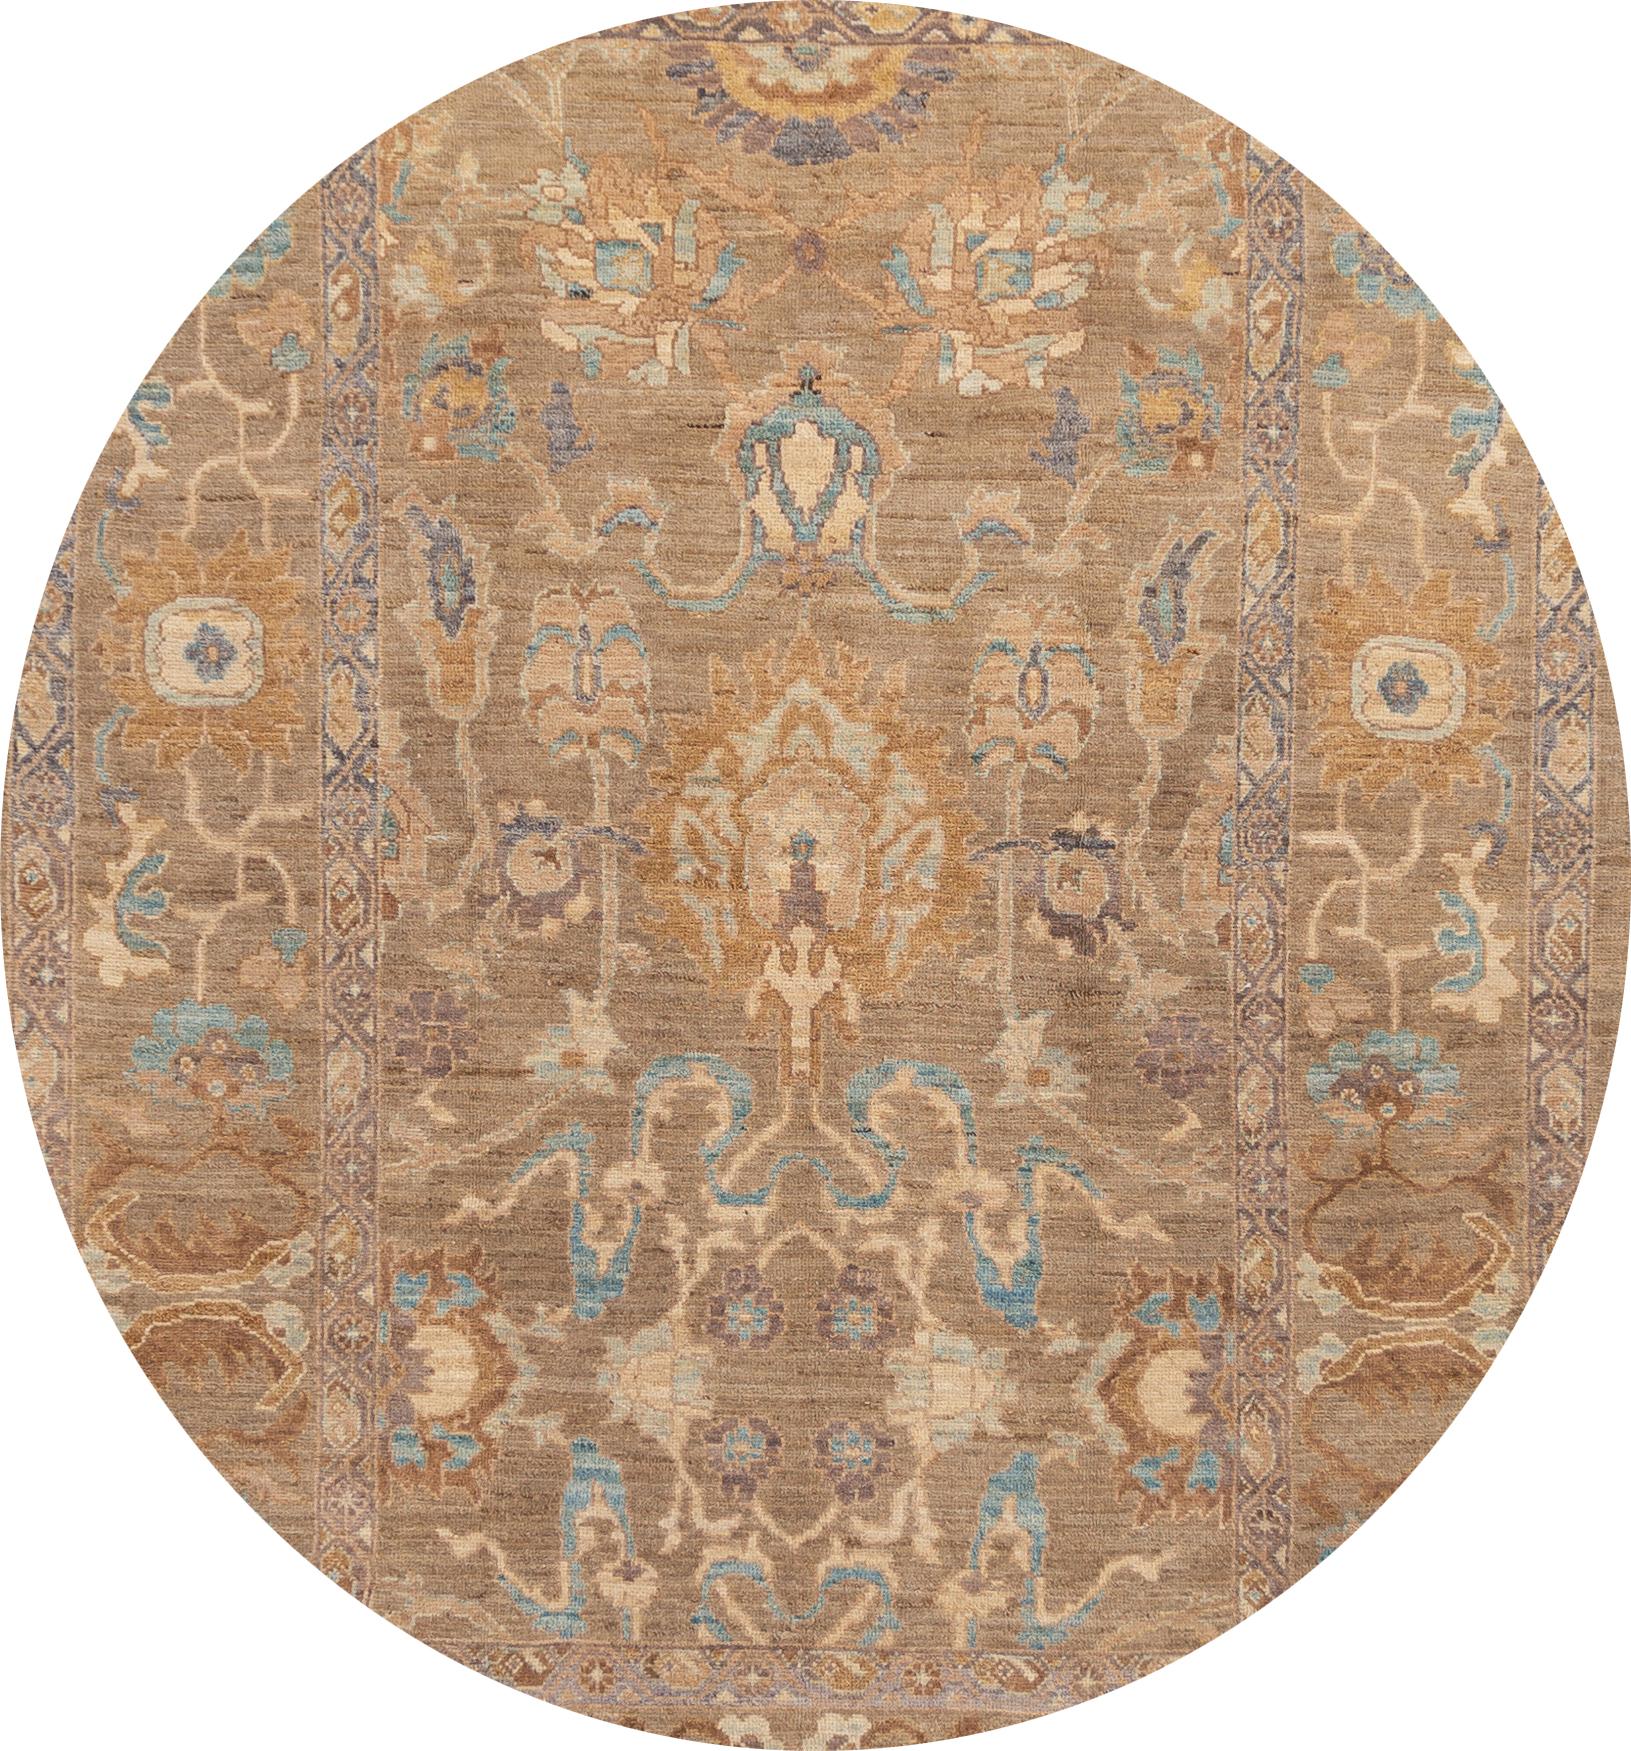 Un magnifique tapis Persan Sultanabad moderne du 21ème siècle avec un motif beige dispersé sur toute la surface. Cette collection est en laine, nouée à la main, et fabriquée en Iran. 

Ce tapis mesure 6'8